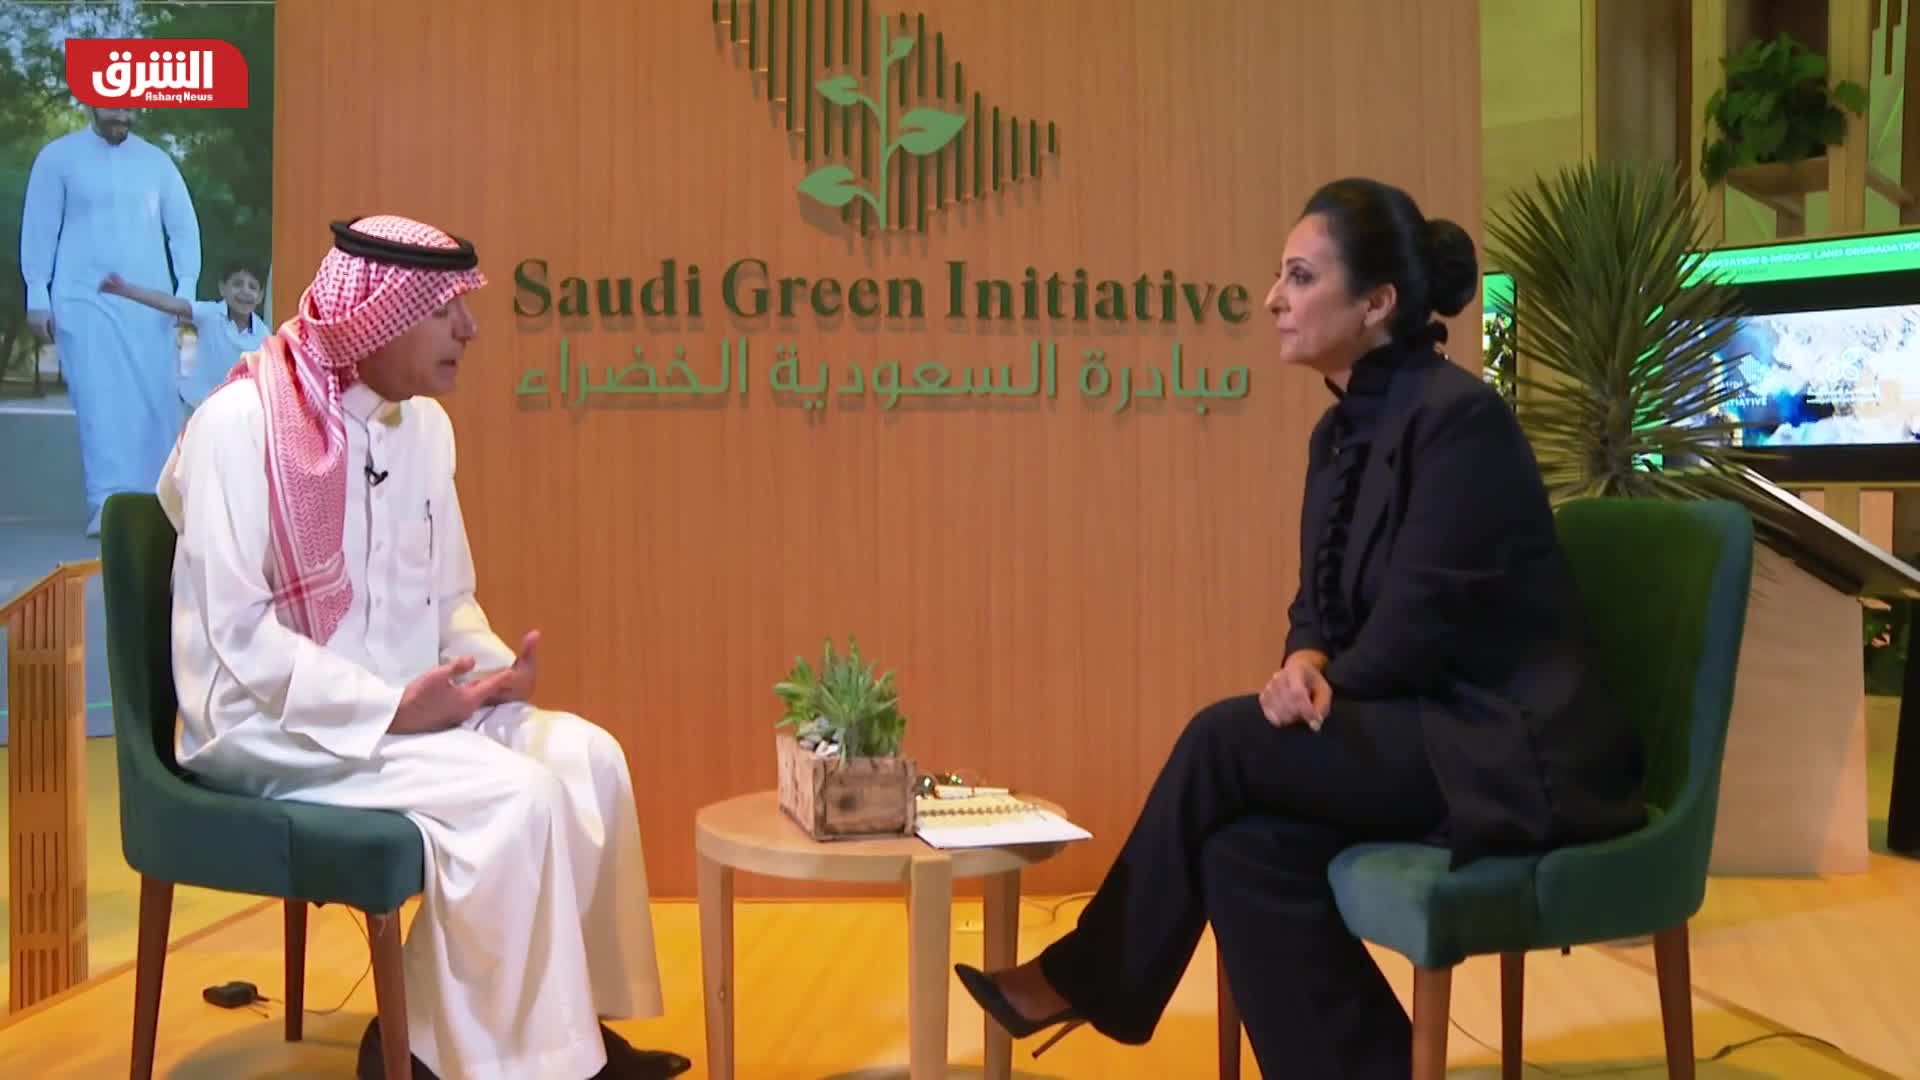 عادل الجبير: طموحات موازنة السعودية الخضراء عالية جدا